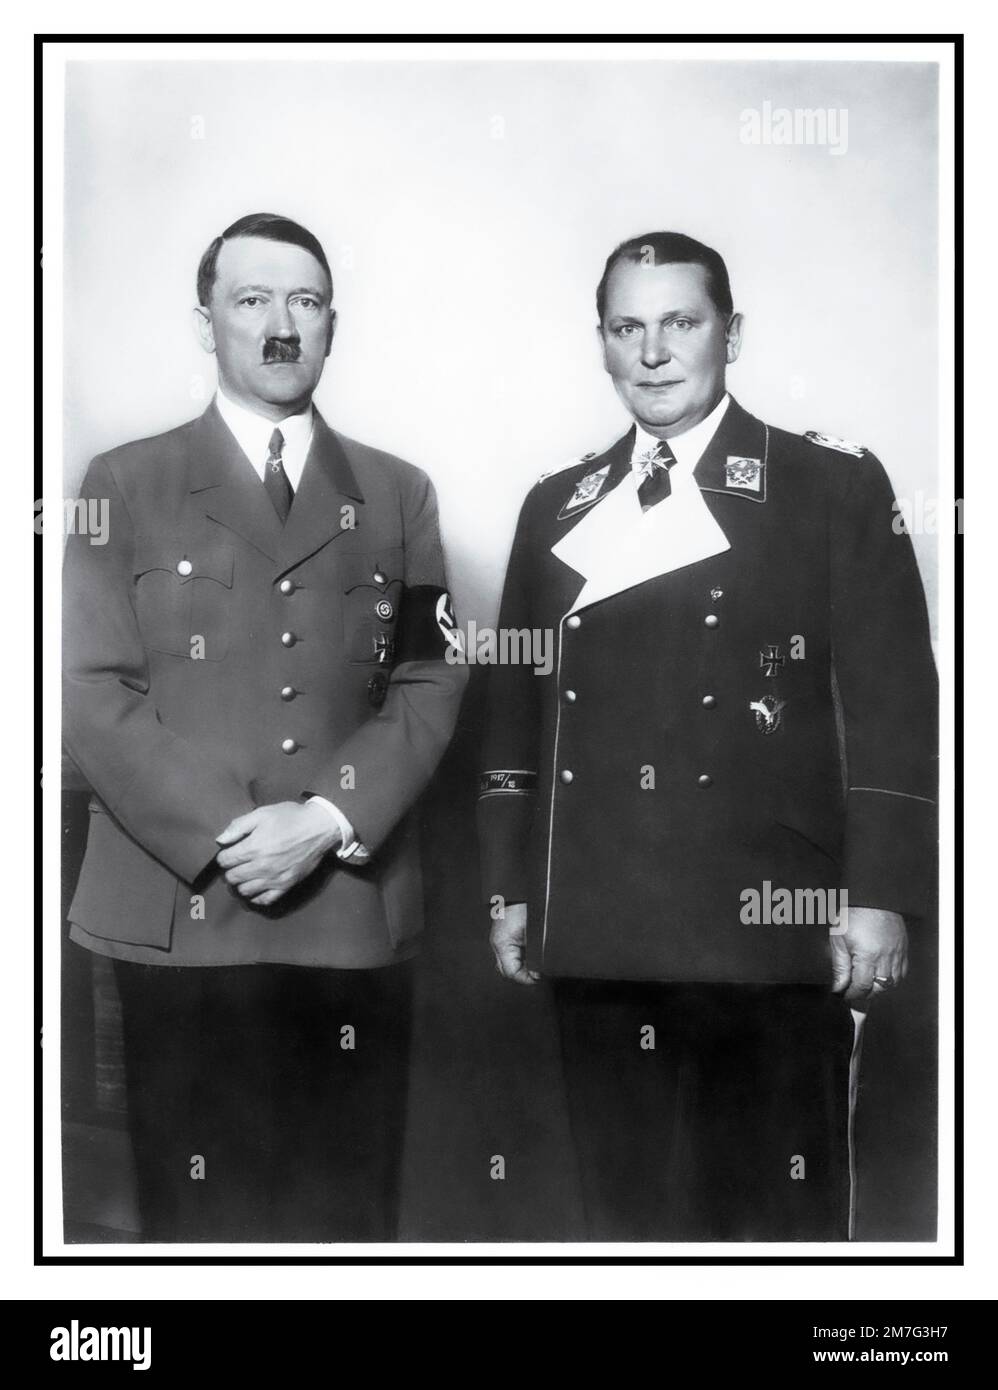 Adolf Hitler e Hermann Goering in uniforme 1930s che si propongono insieme per un formale ritratto a metà lunghezza del fotografo Heinrich Hoffmann Foto Stock